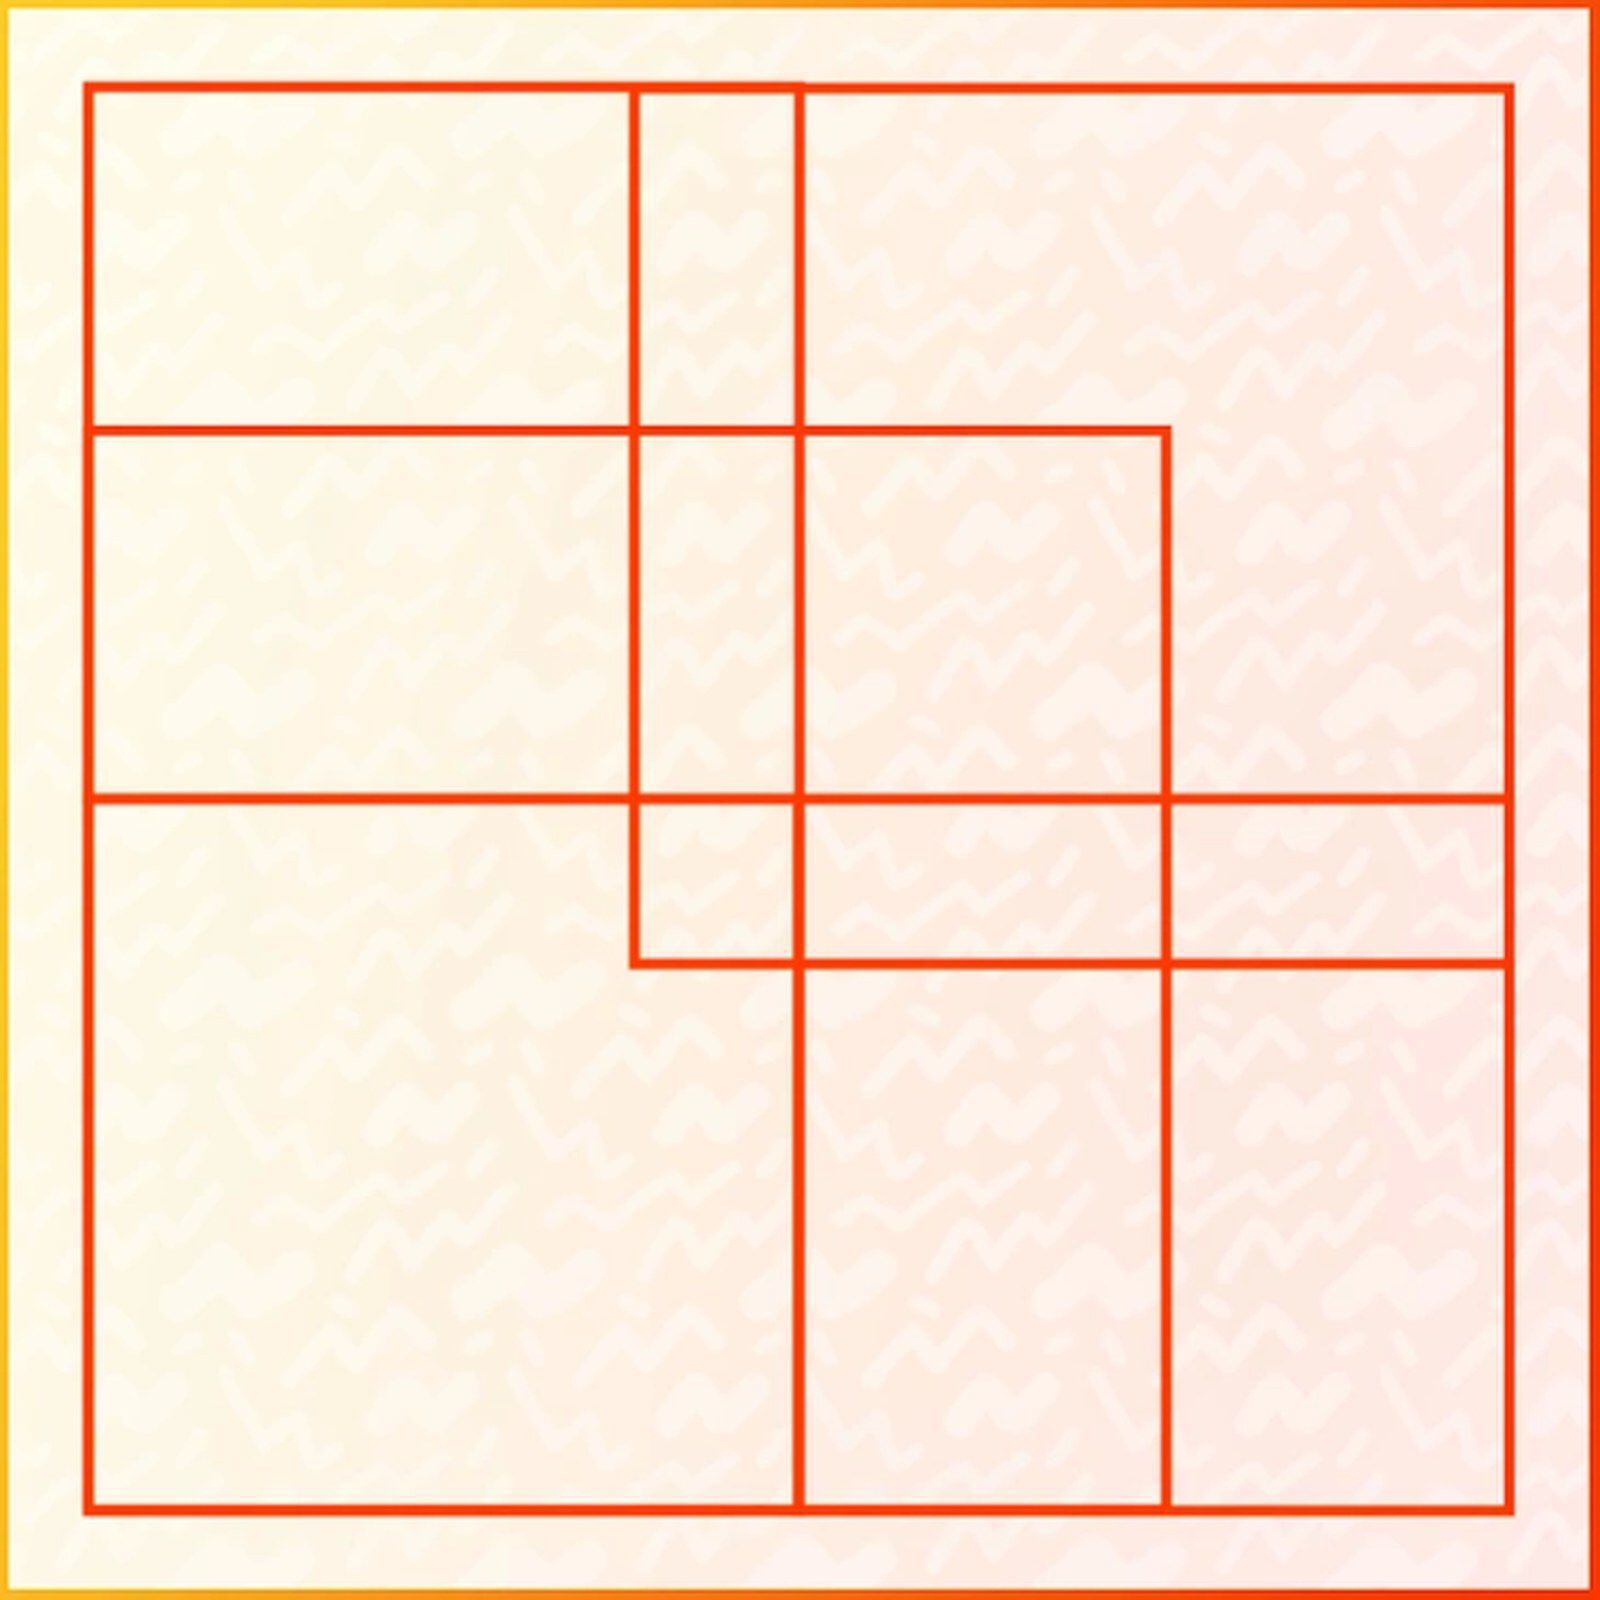 RETO VISUAL | Esta imagen te muestra muchos cuadrados. ¿Cuántos hay en total? (Foto: genial.guru)